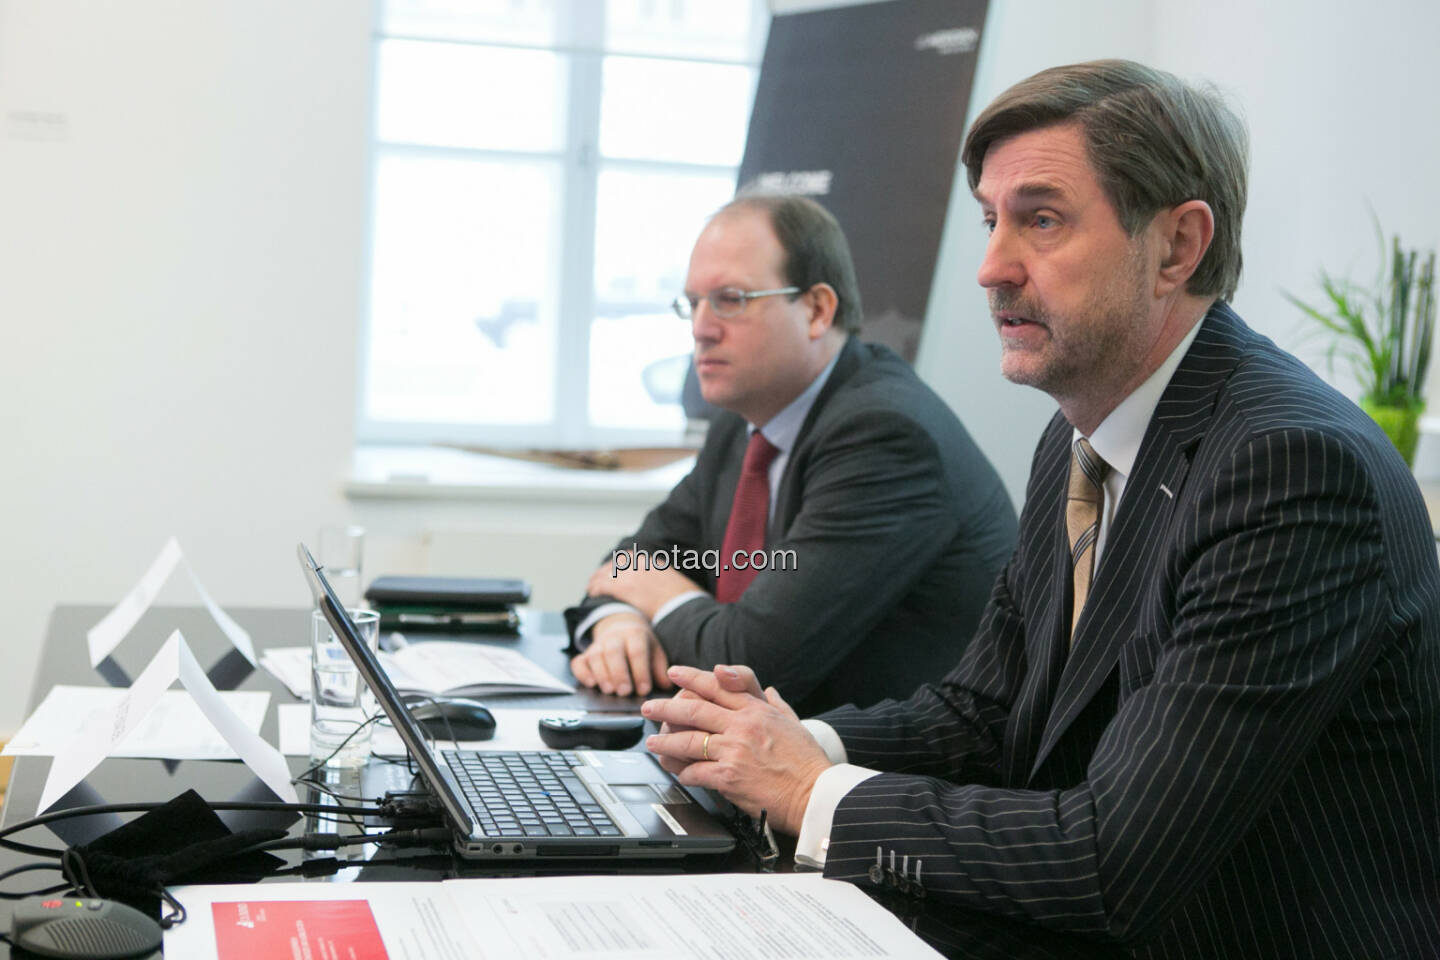 Florian Nowotny, Finanzvorstand der  CA Immo (CFO), Bruno Ettenauer, Vorstandsvorsitzender der CA Immo (CEO)